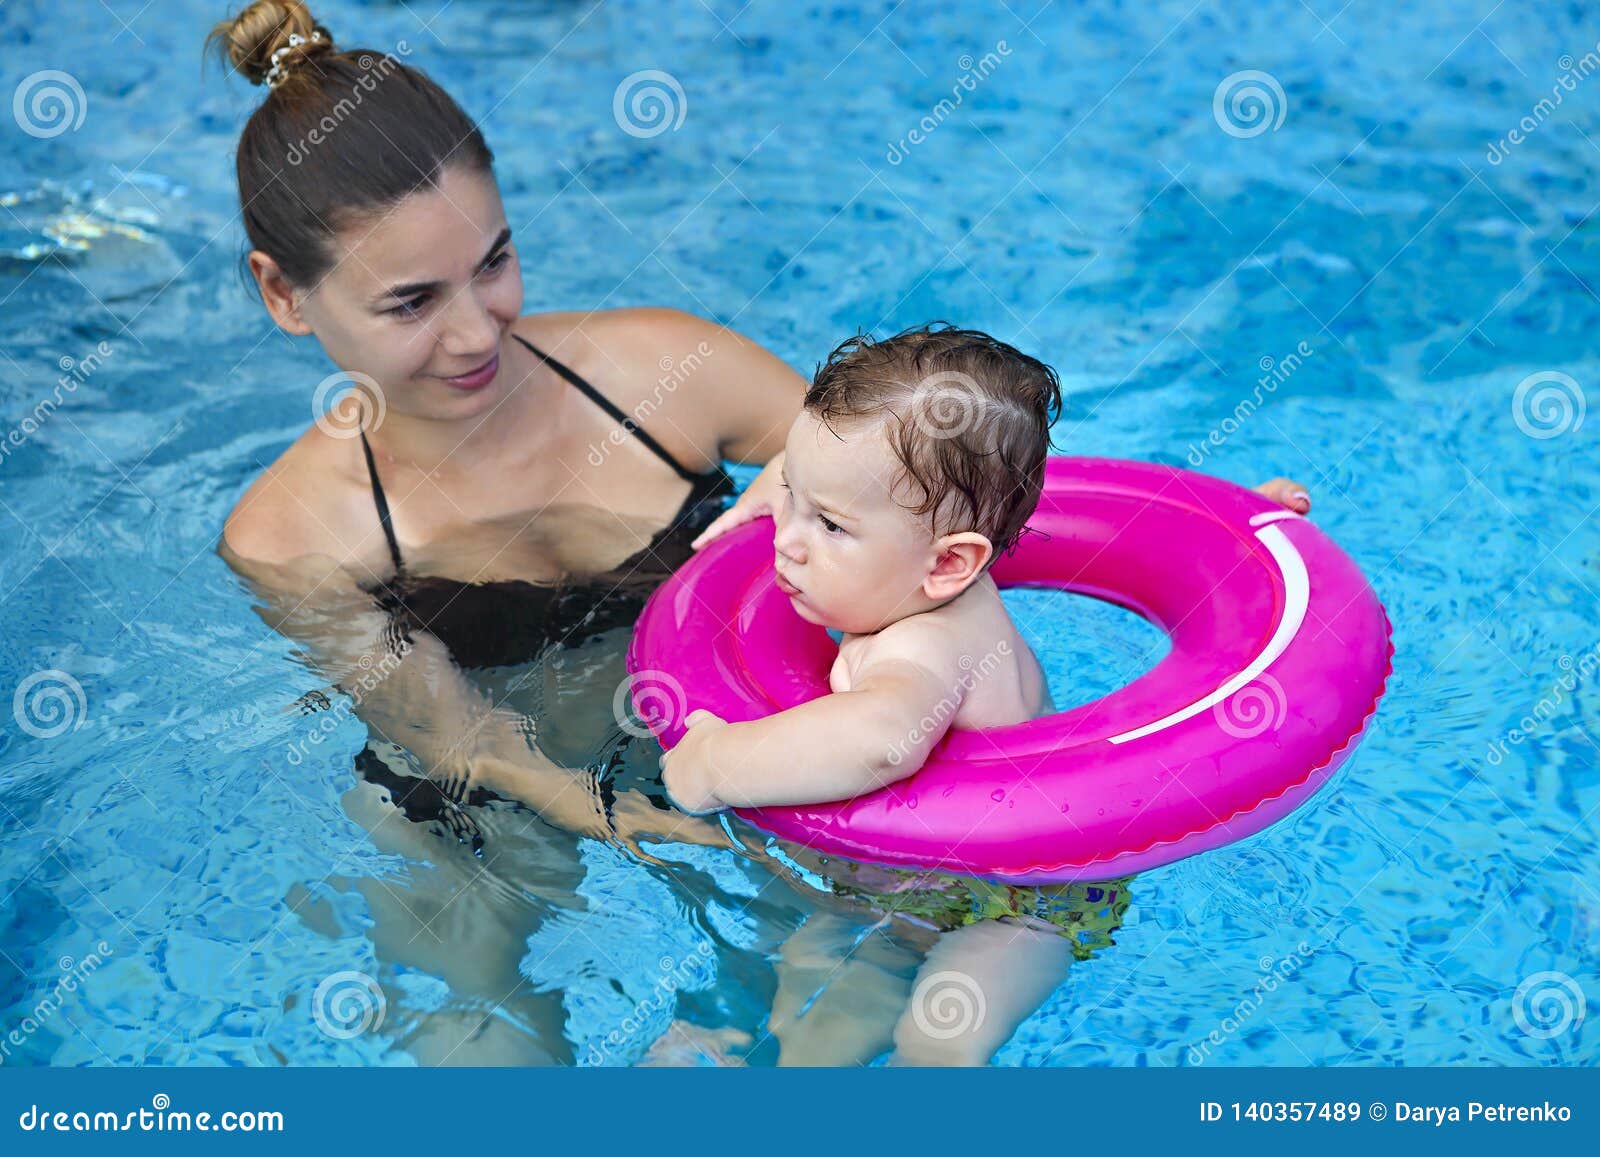 Мама я плыву москва. Мальчик в бассейне с мамой. Накупались в бассейне мама с дочей. Девочка и мама бассейн. Мама плавает в бассейне.